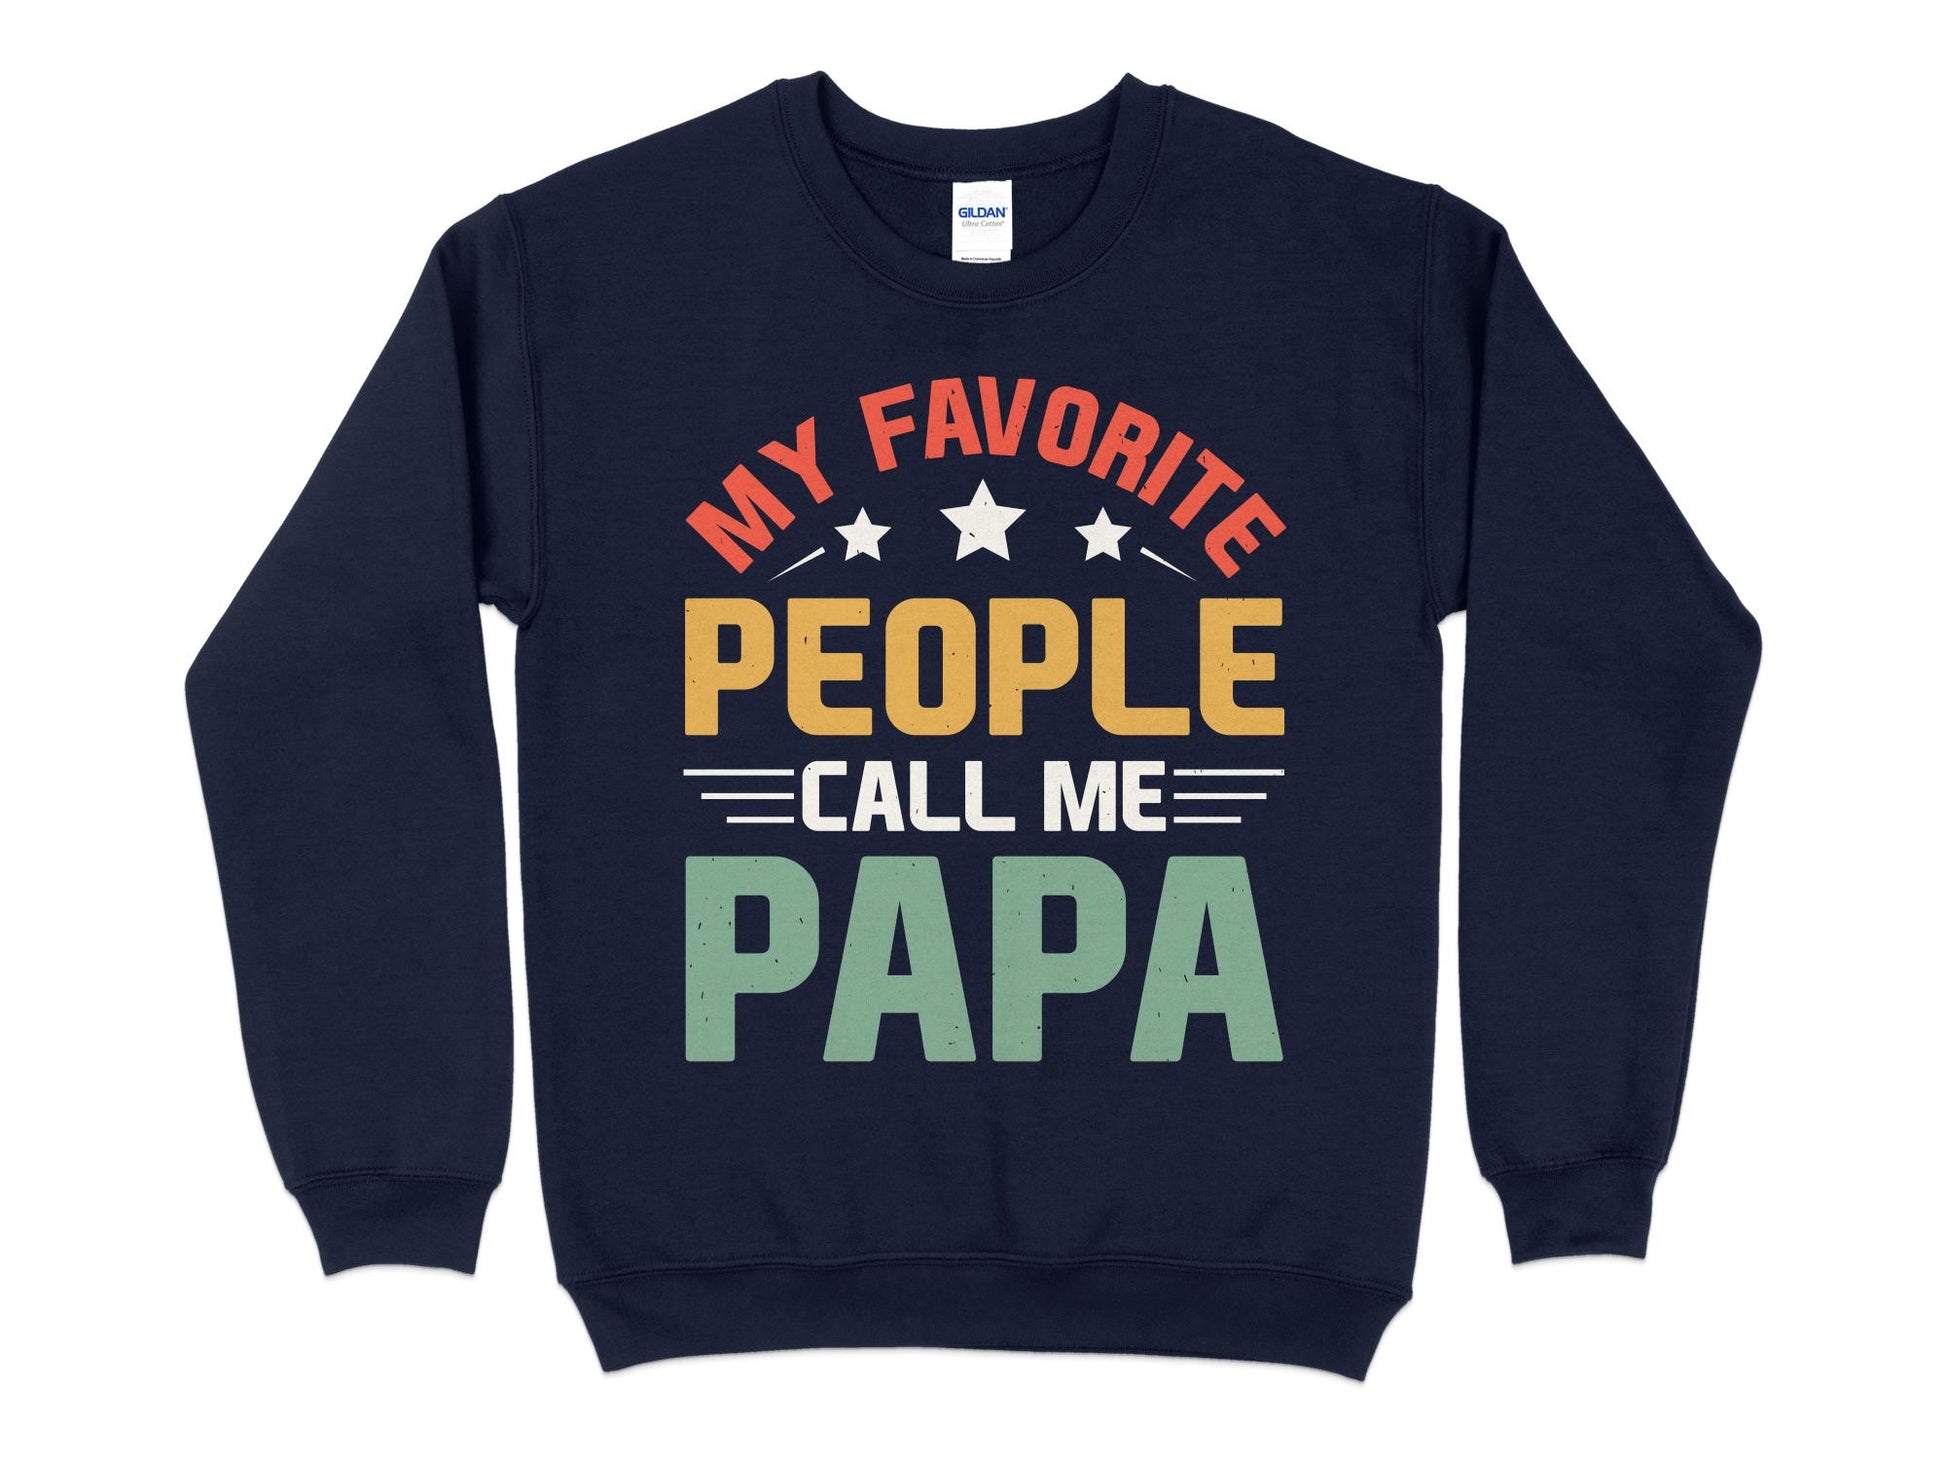 My Favorite People Call Me Papa Sweatshirt, navy blue